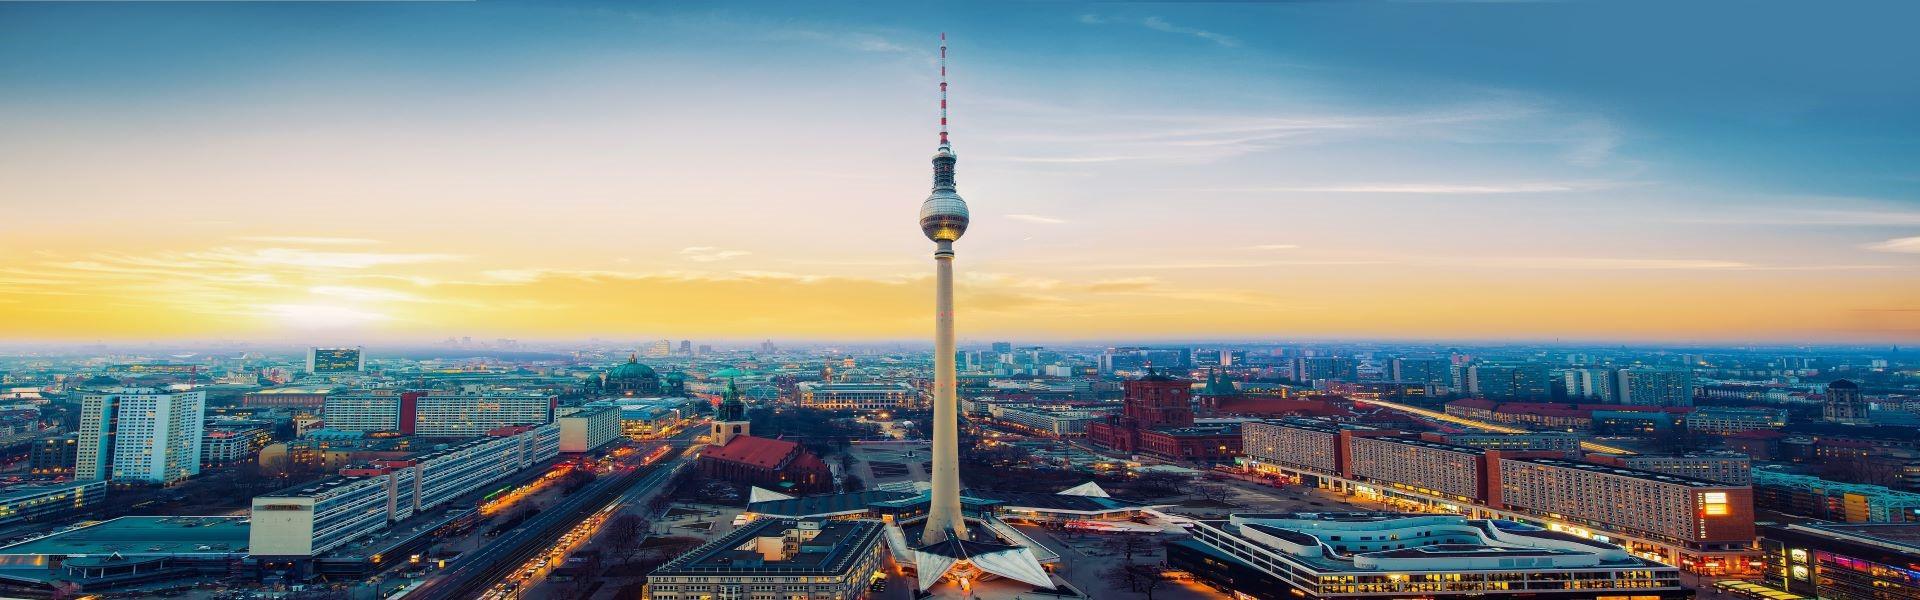 برج تلویزیون برلین  Berliner Fernsehturm